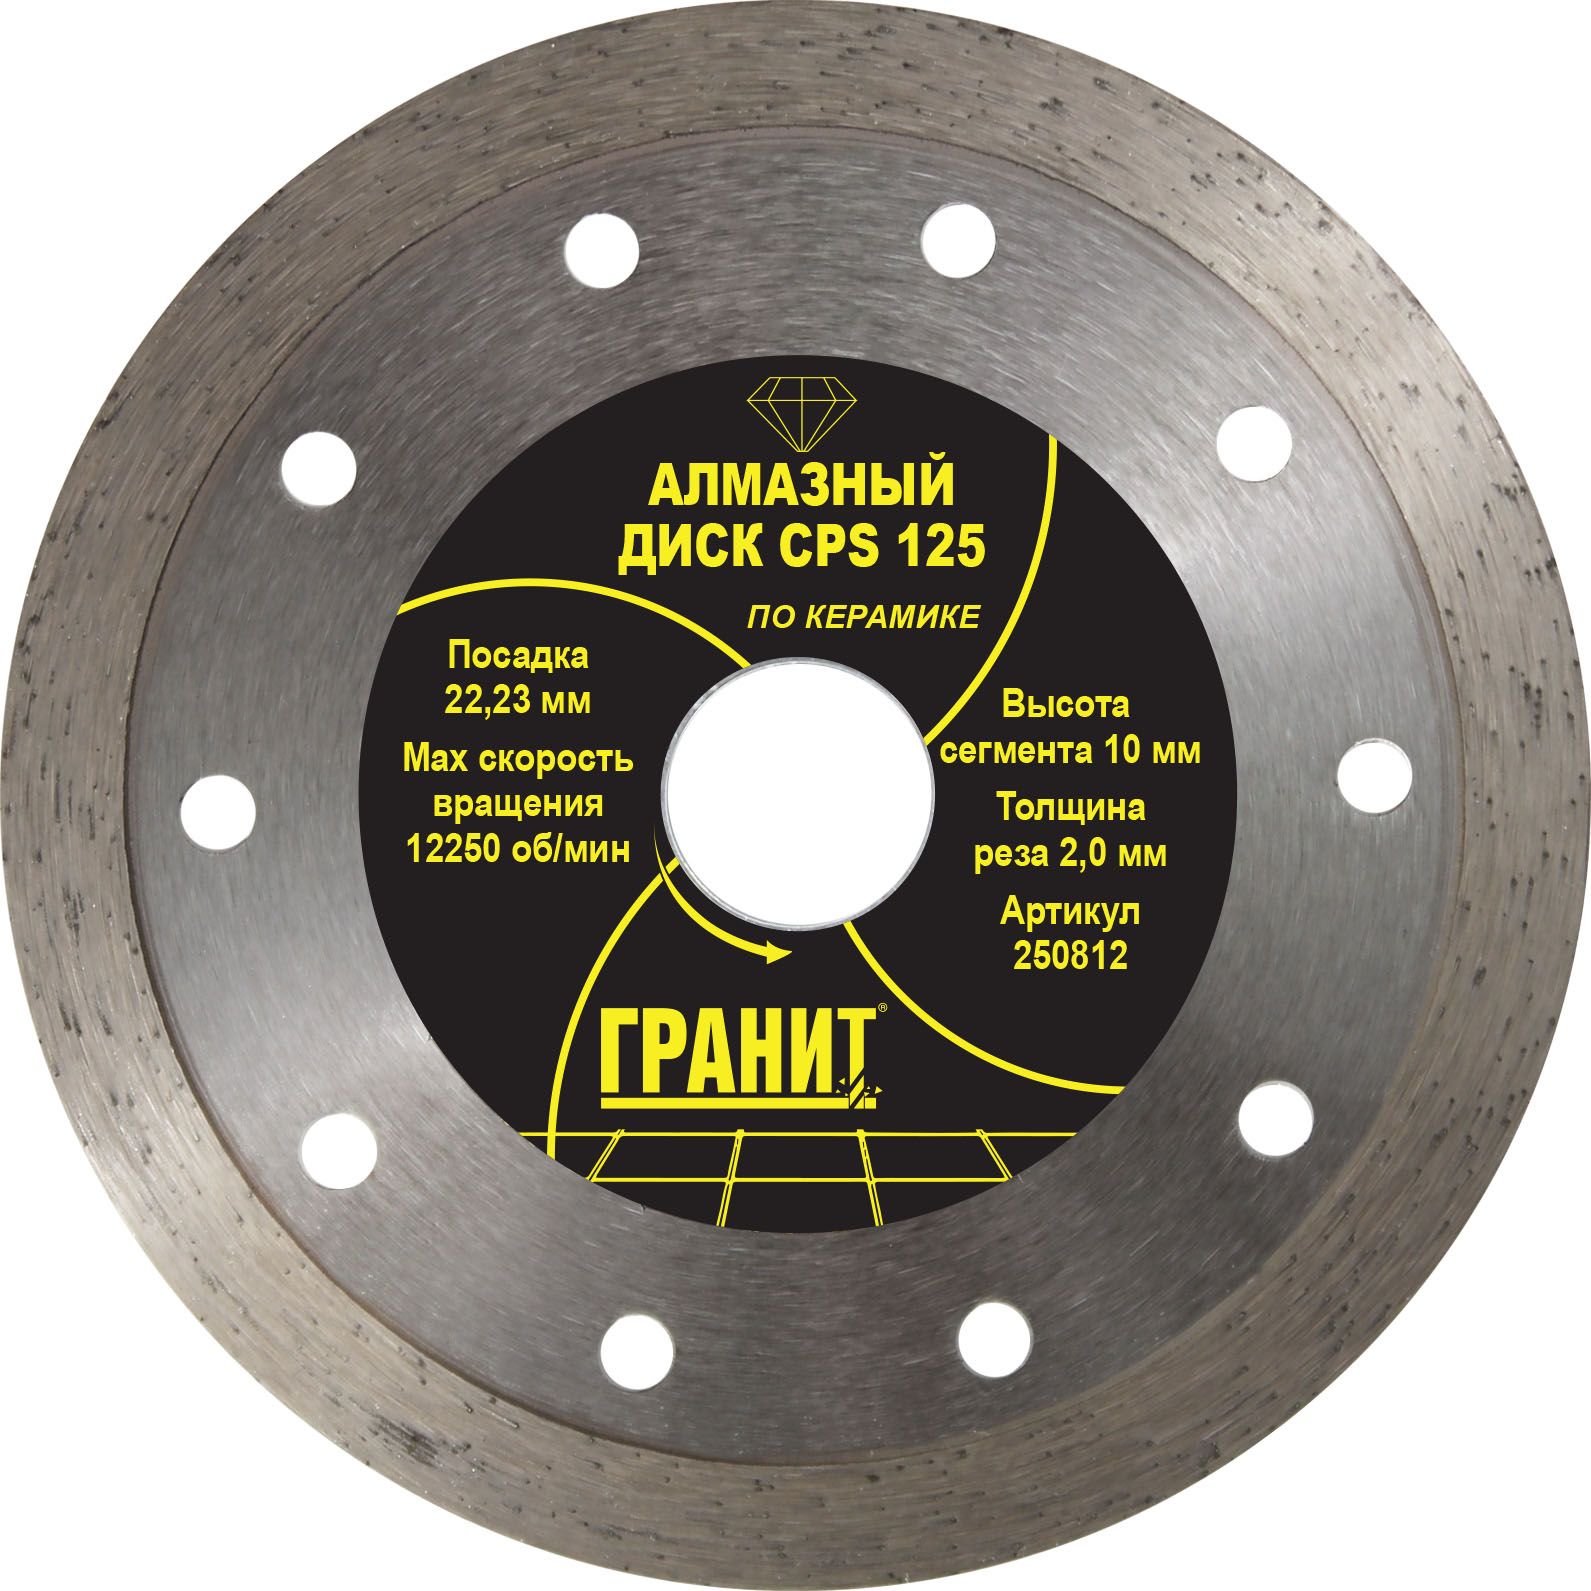 Алмазный диск по керамике Гранит CPS 125x2.0x10 250812 Гранит от магазина Tehnorama